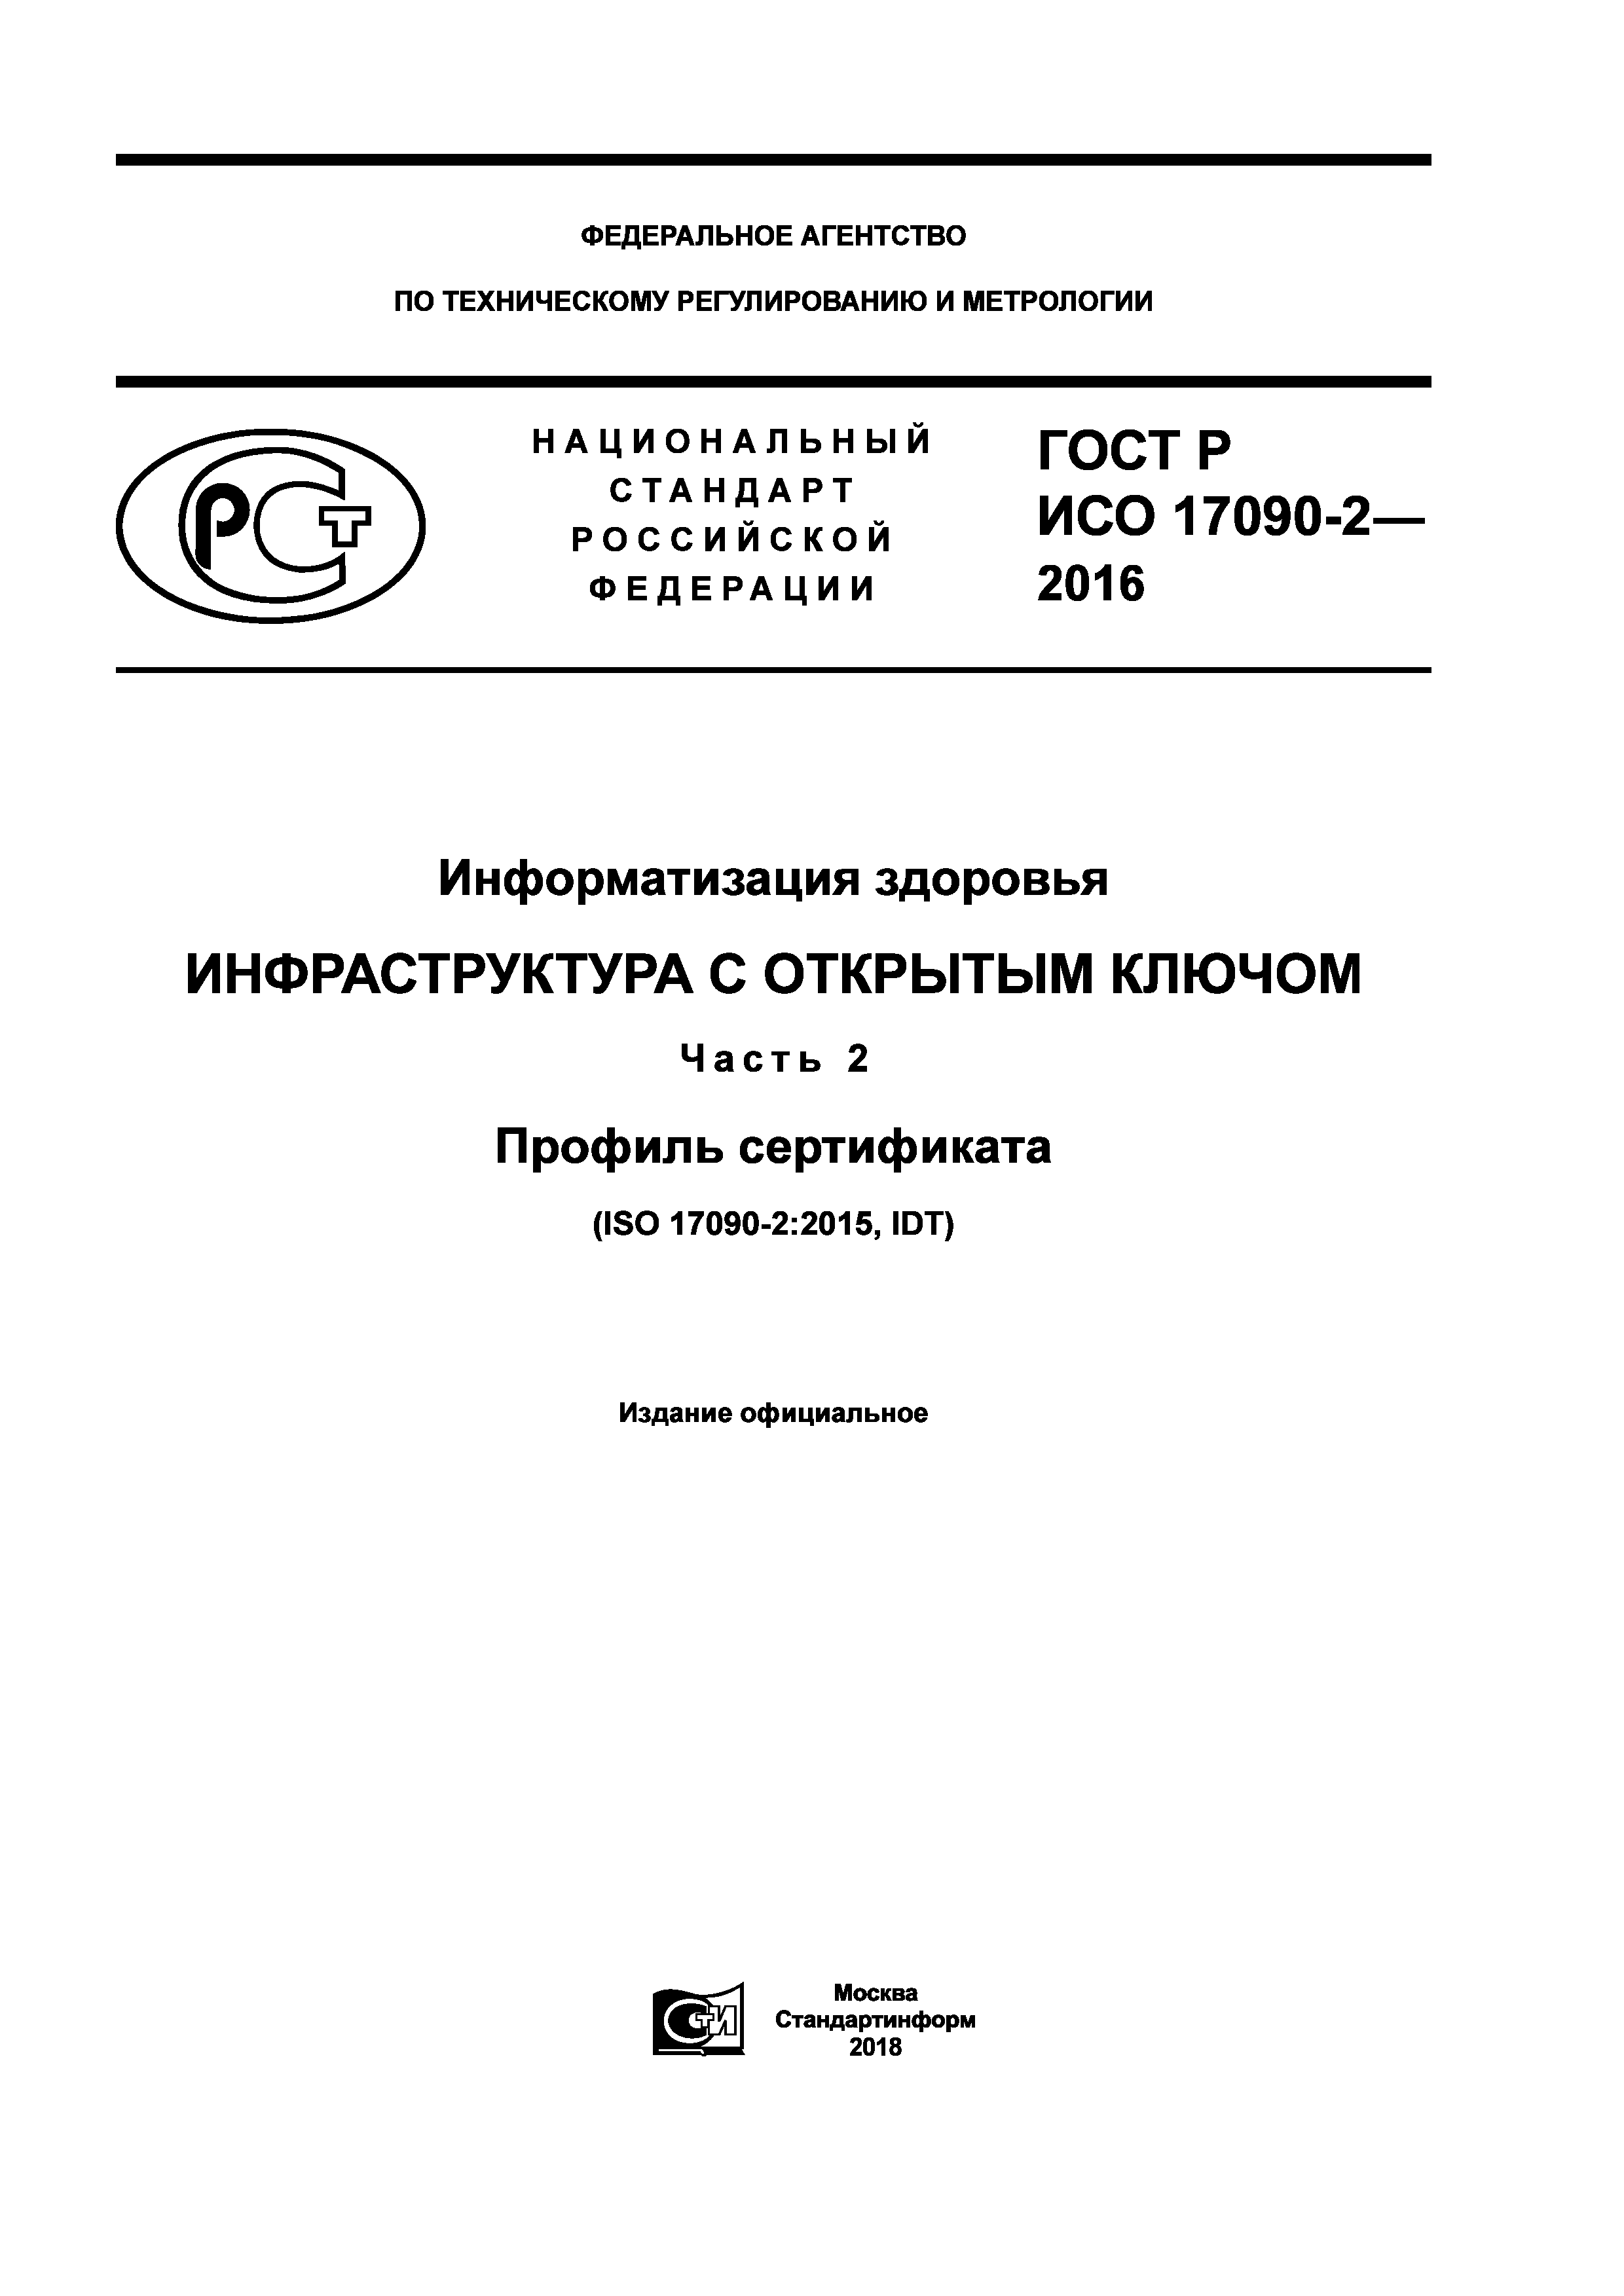 ГОСТ Р ИСО 17090-2-2016